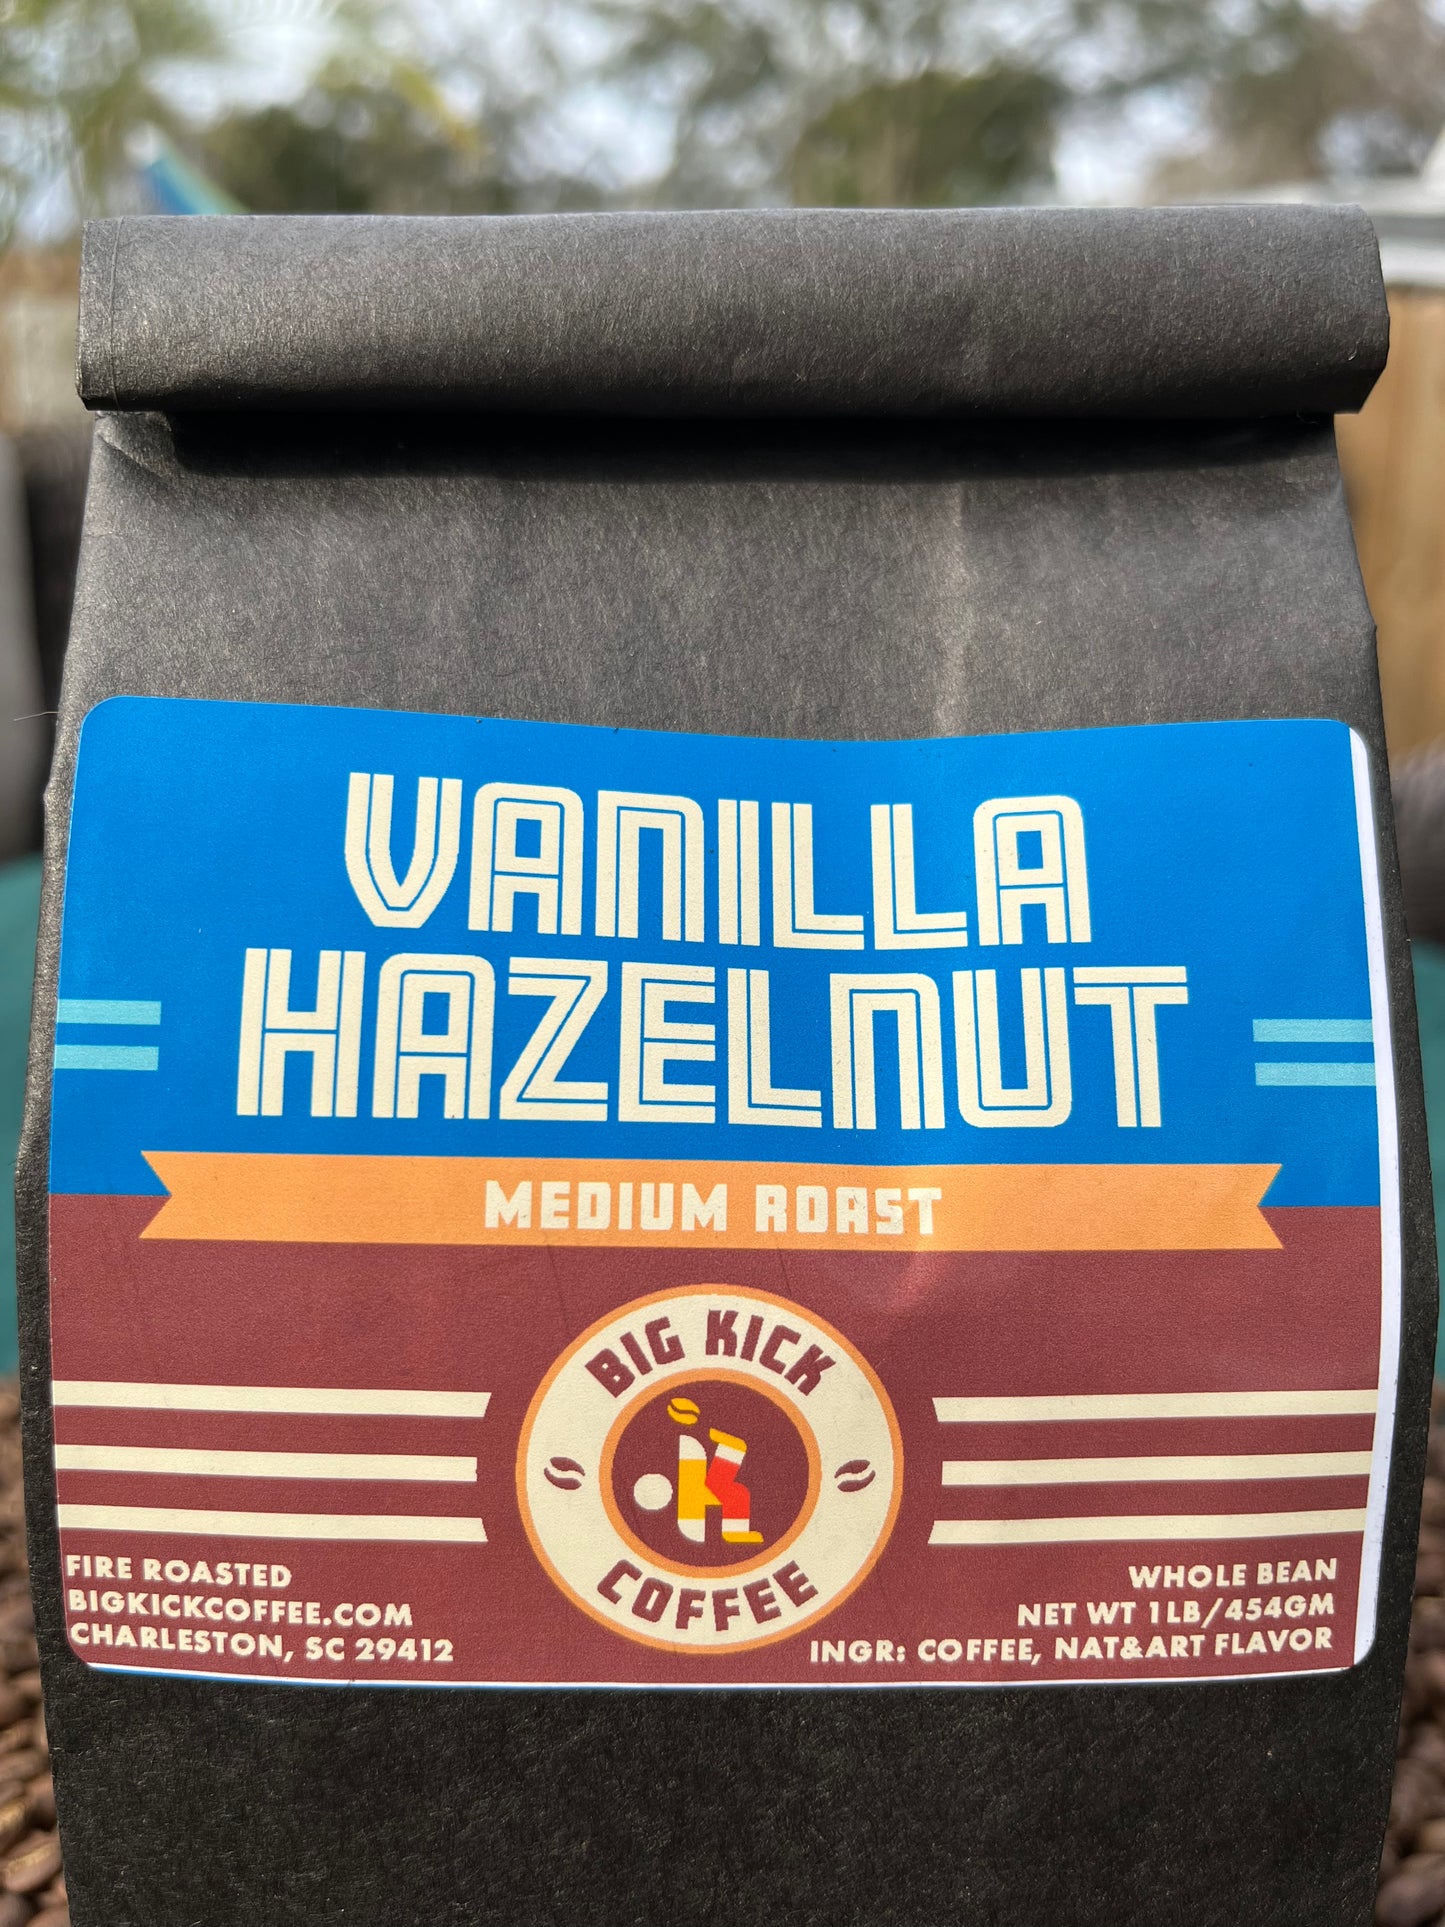 Vanilla Hazelnut